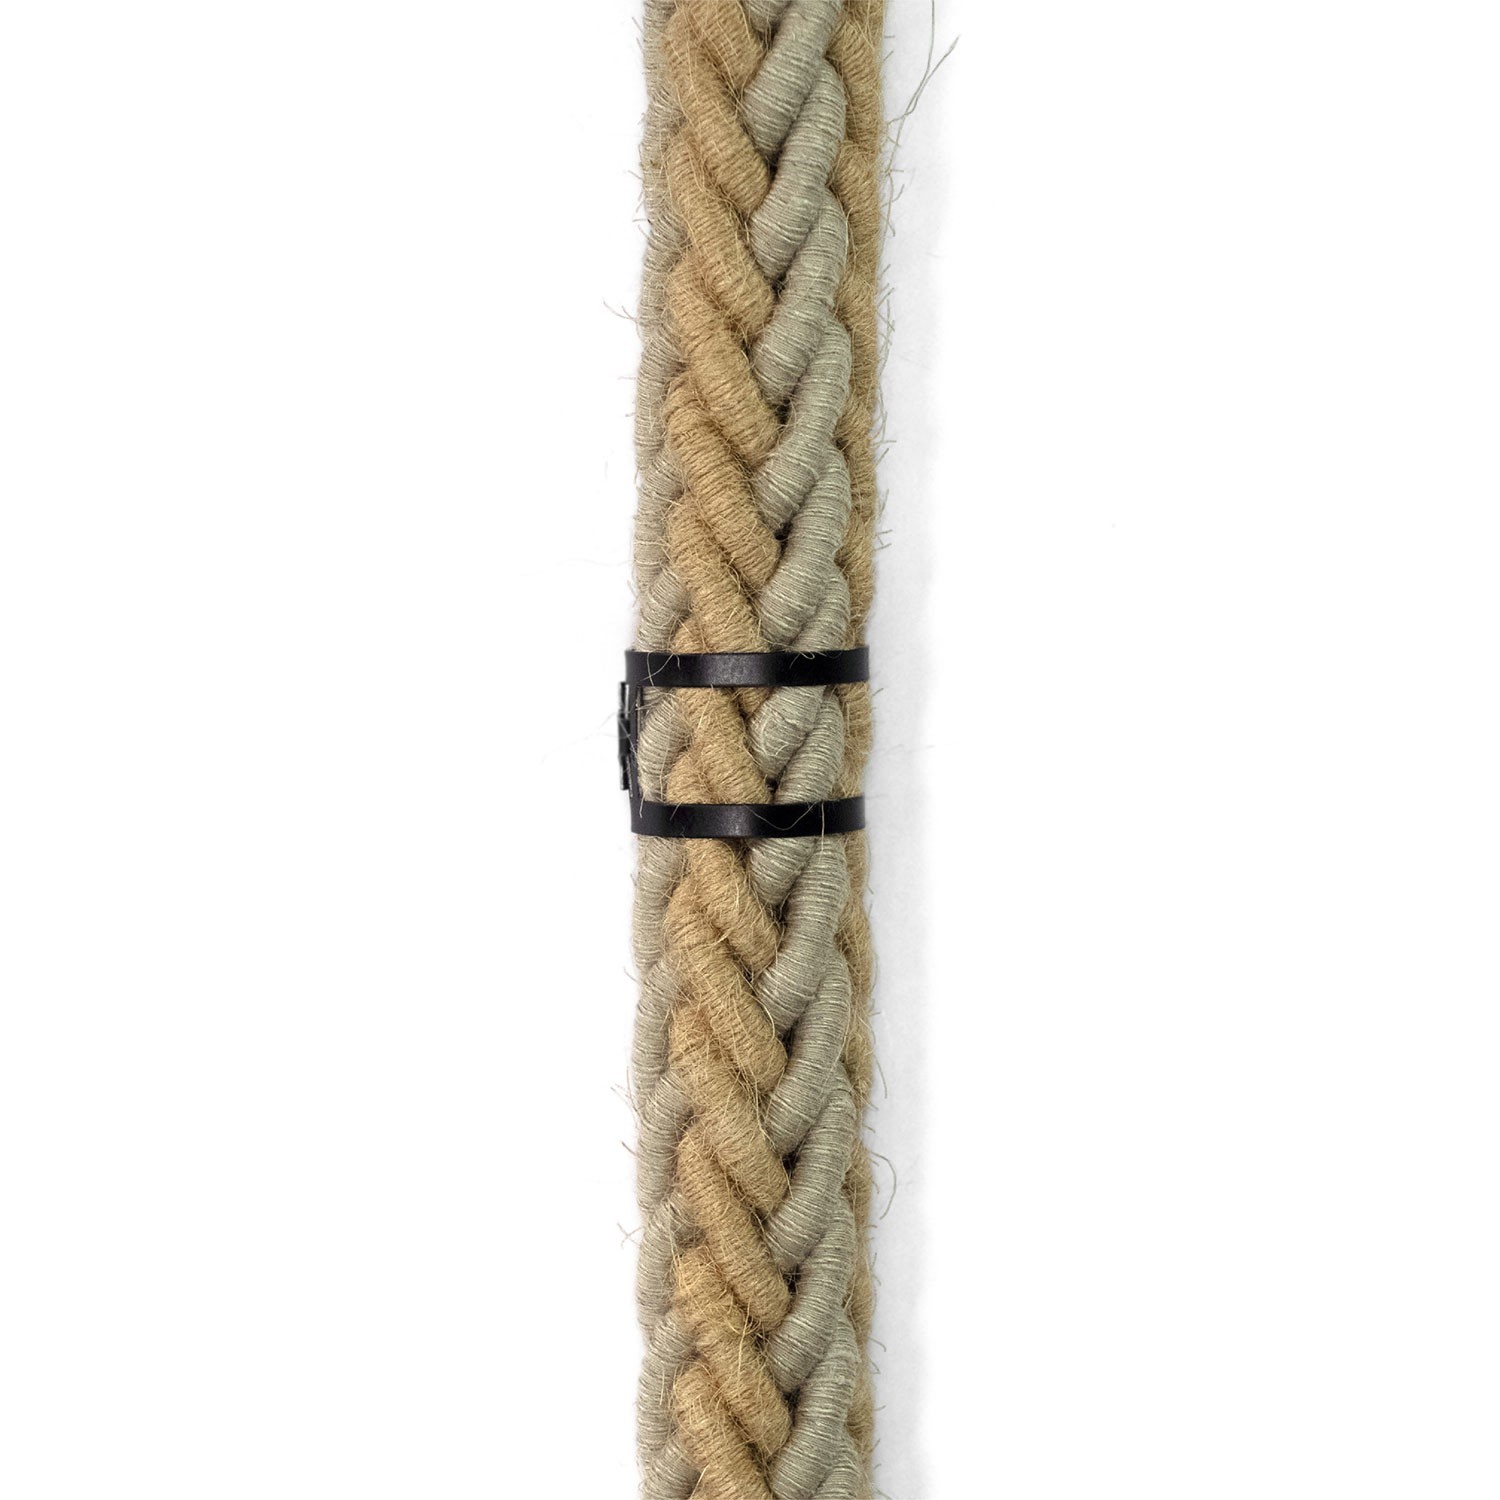 Snake Bis-bedrading met houten fitting, metalen eindklem en 2XL touw van jute en natuurlijk grijs linnen